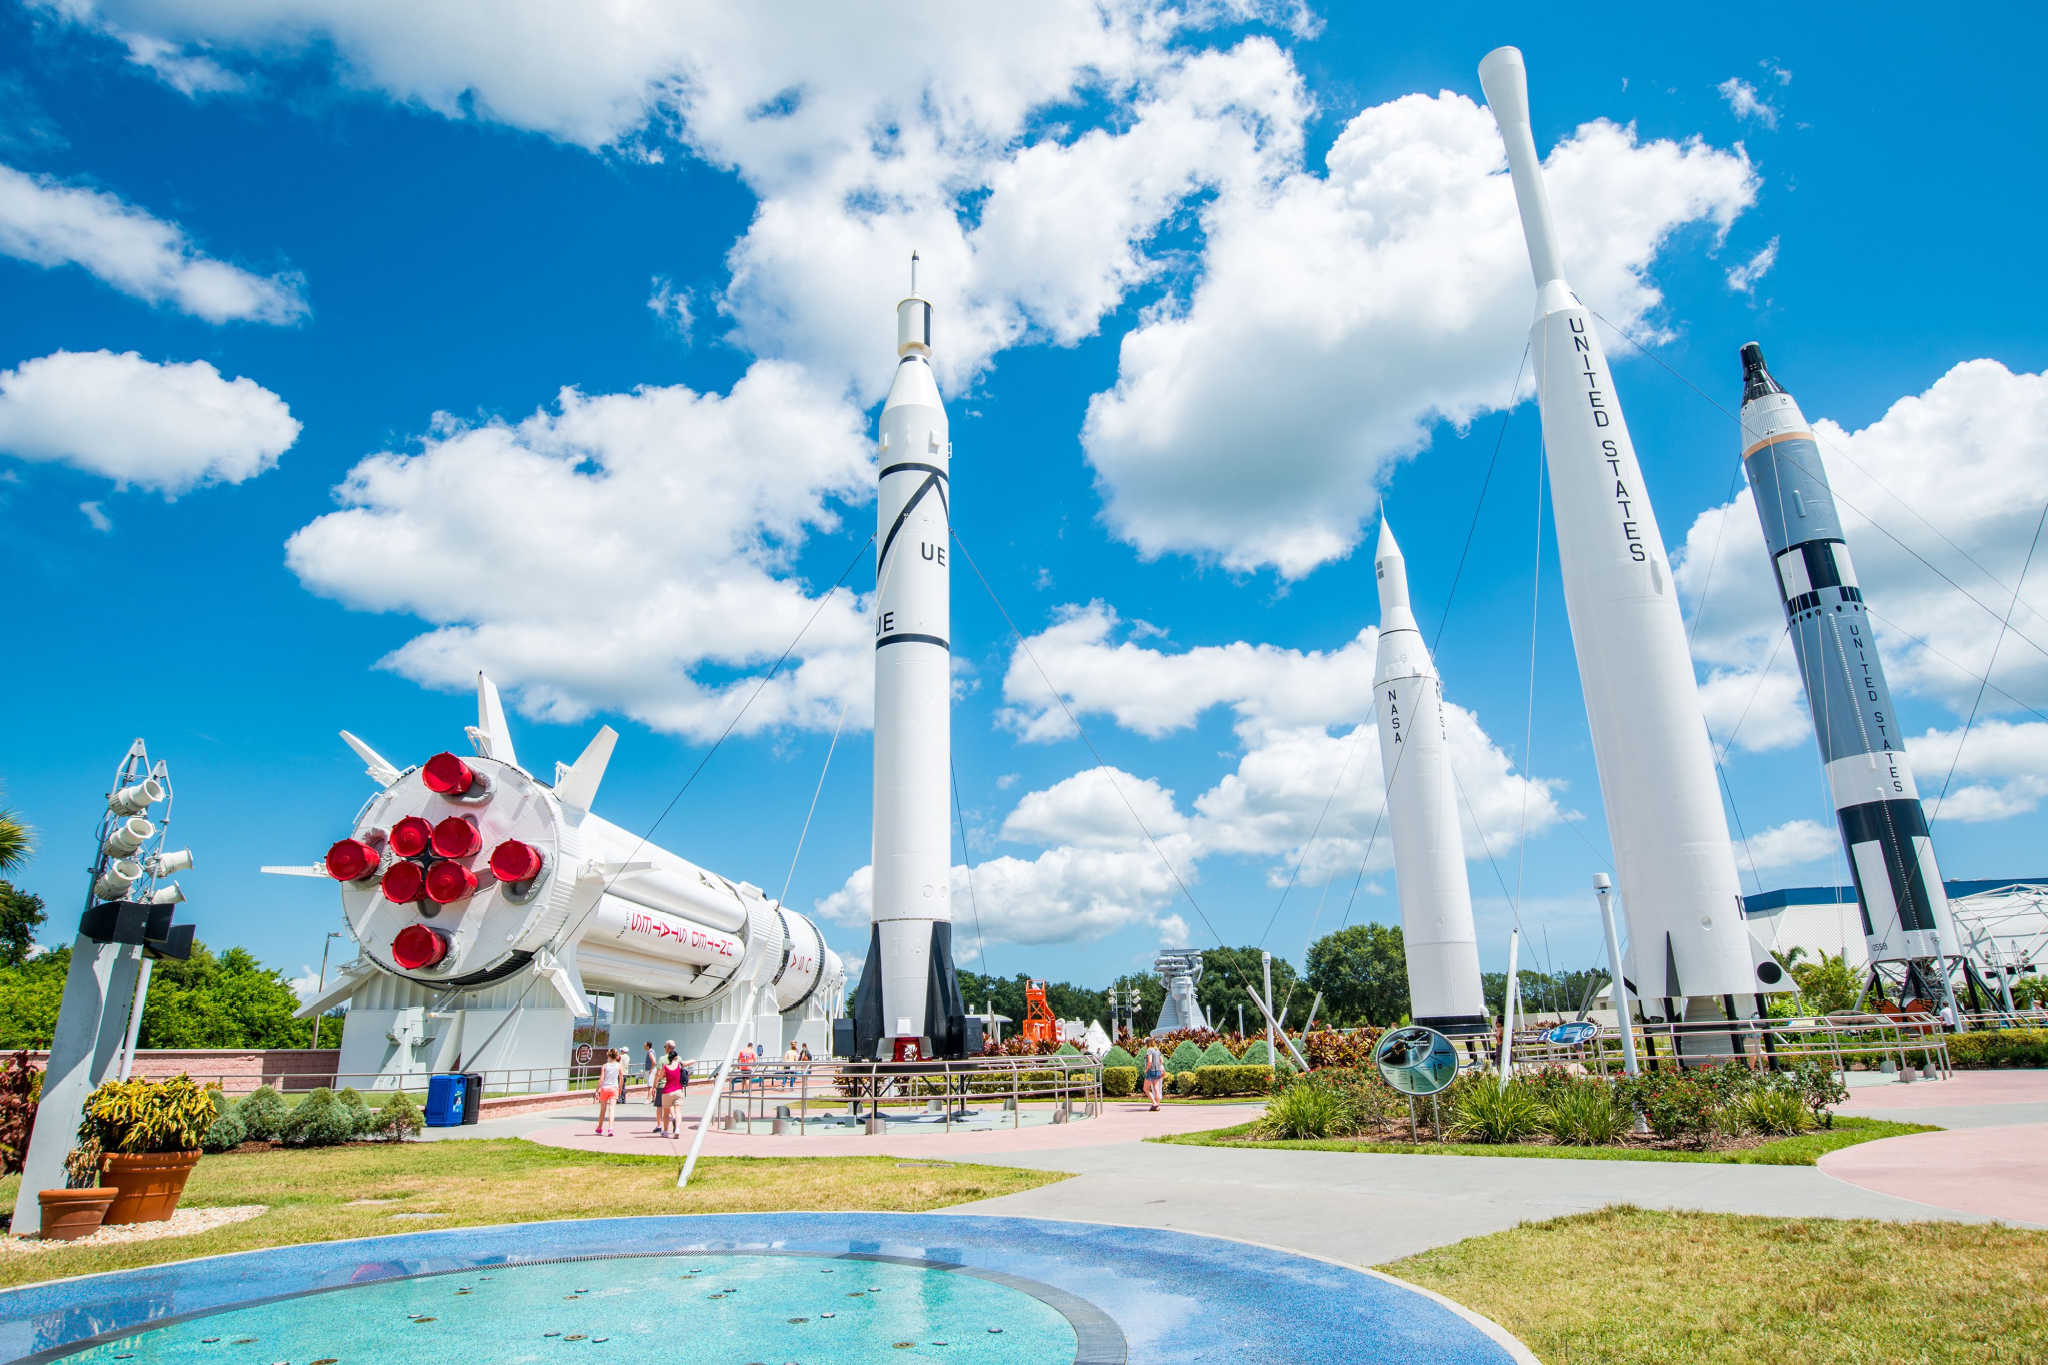 Kennedy space center jardim de foguetes